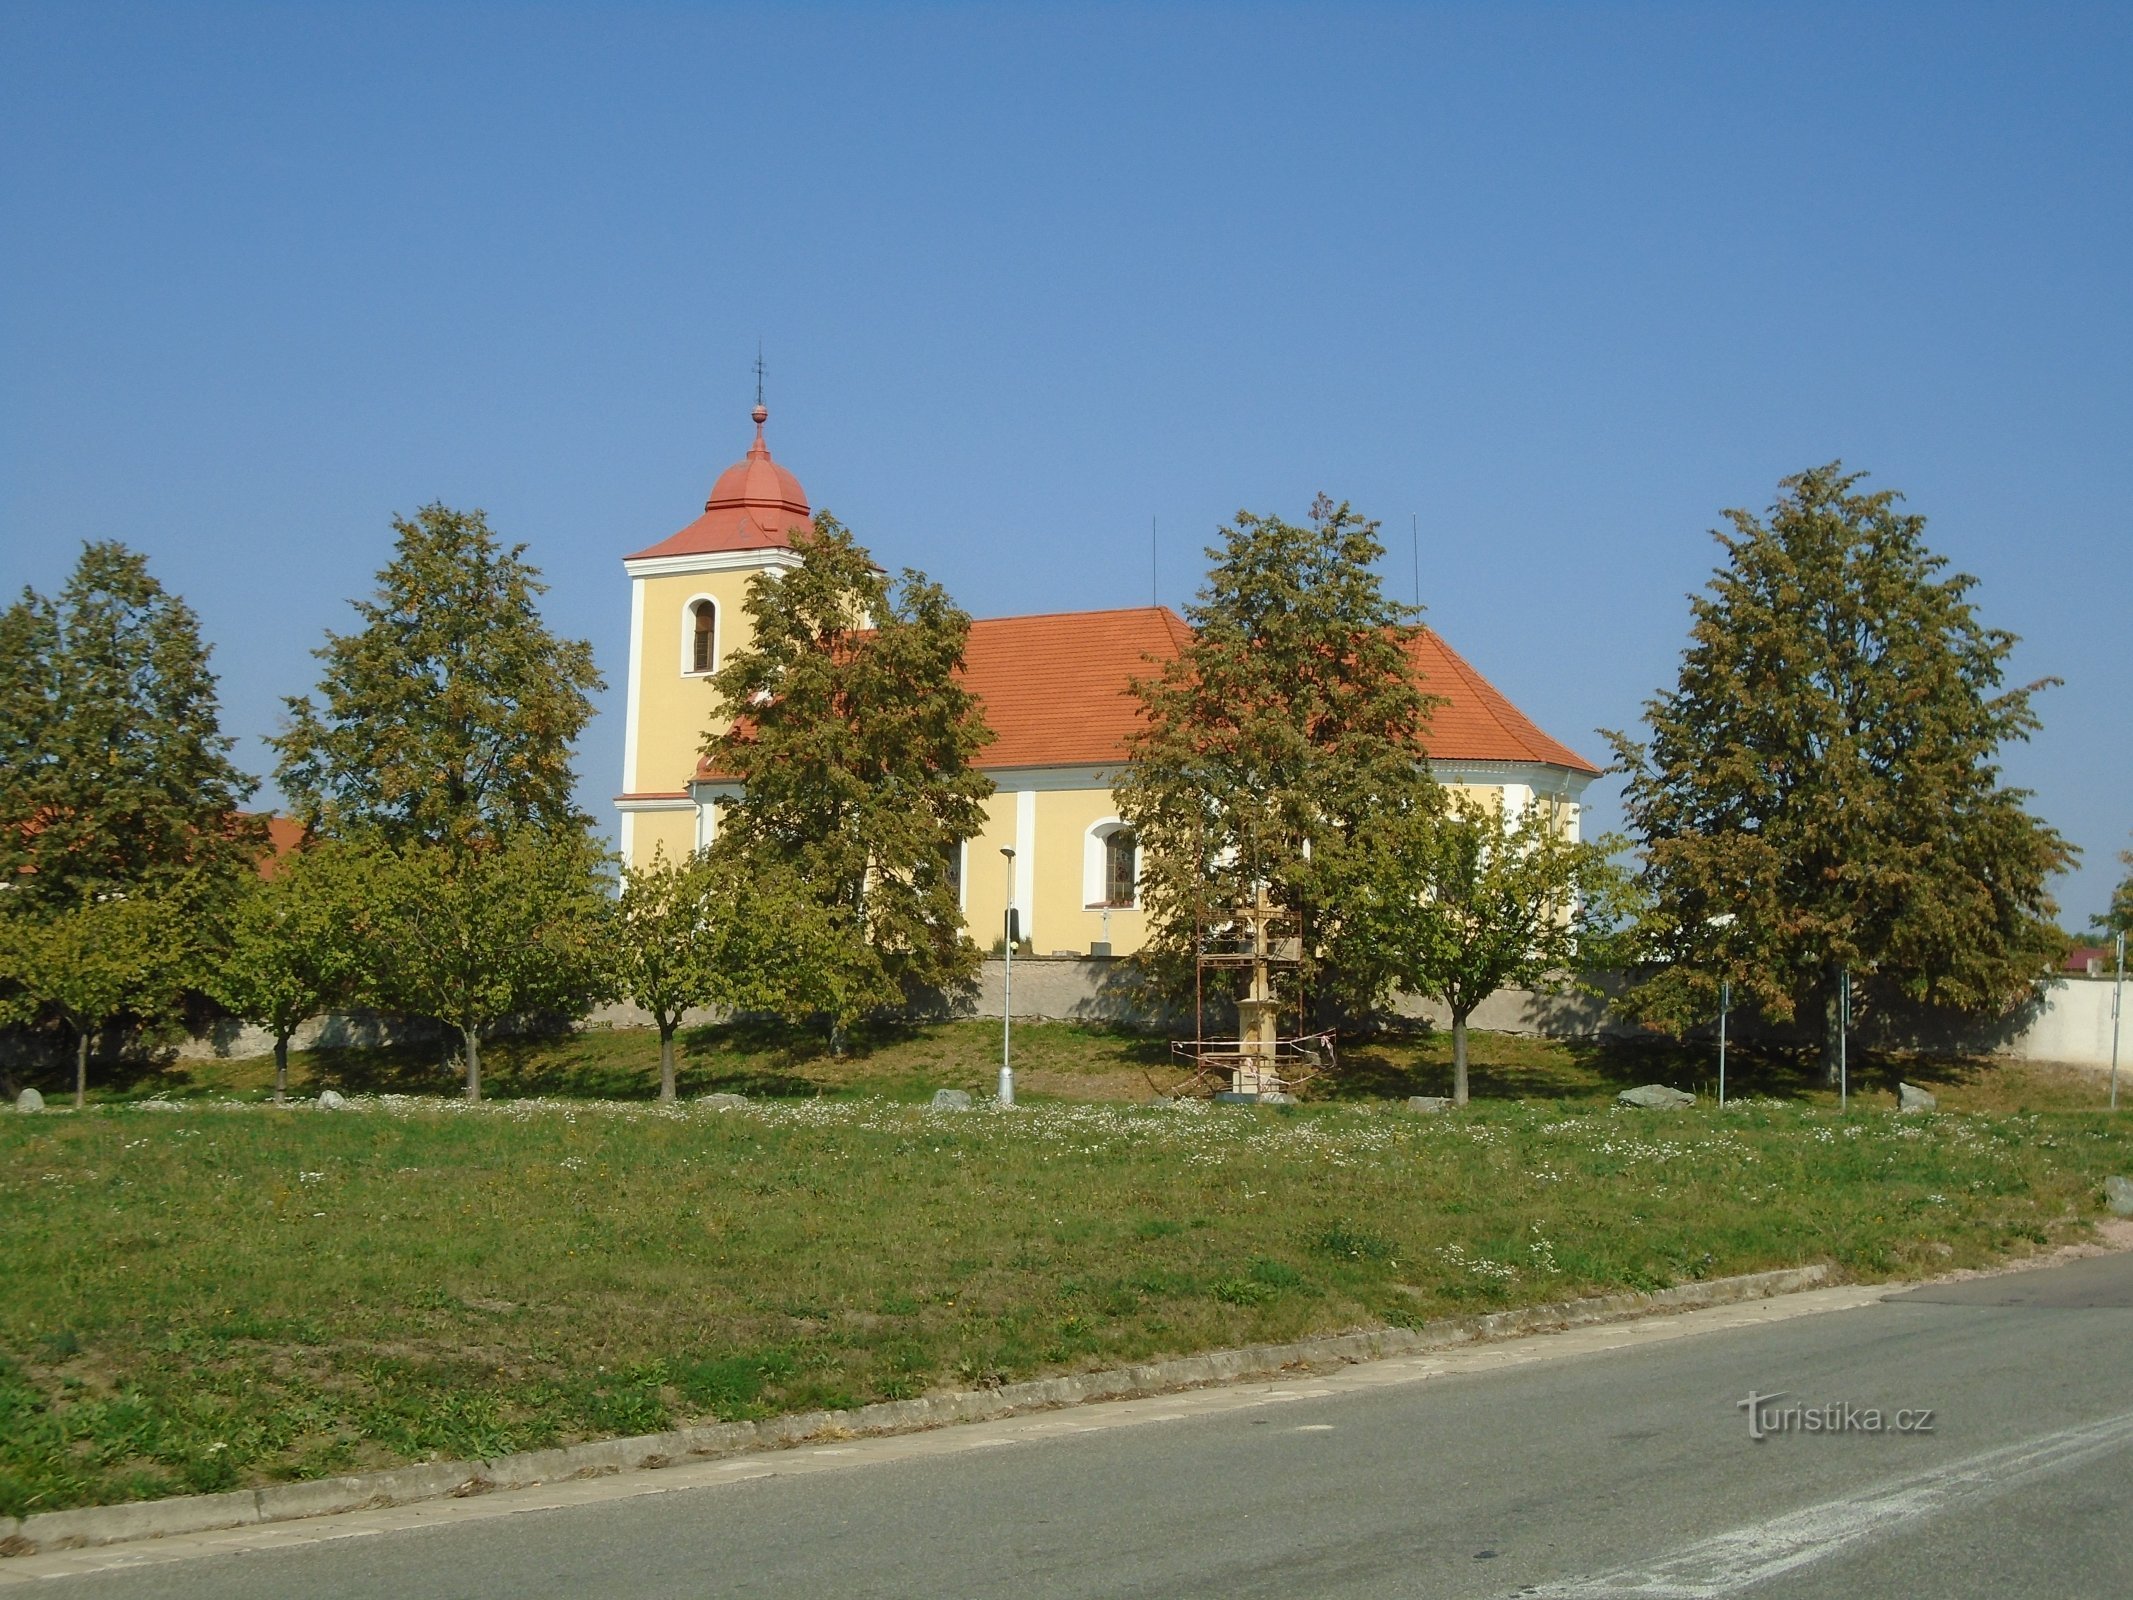 Église de St. Jiří (Býšť)